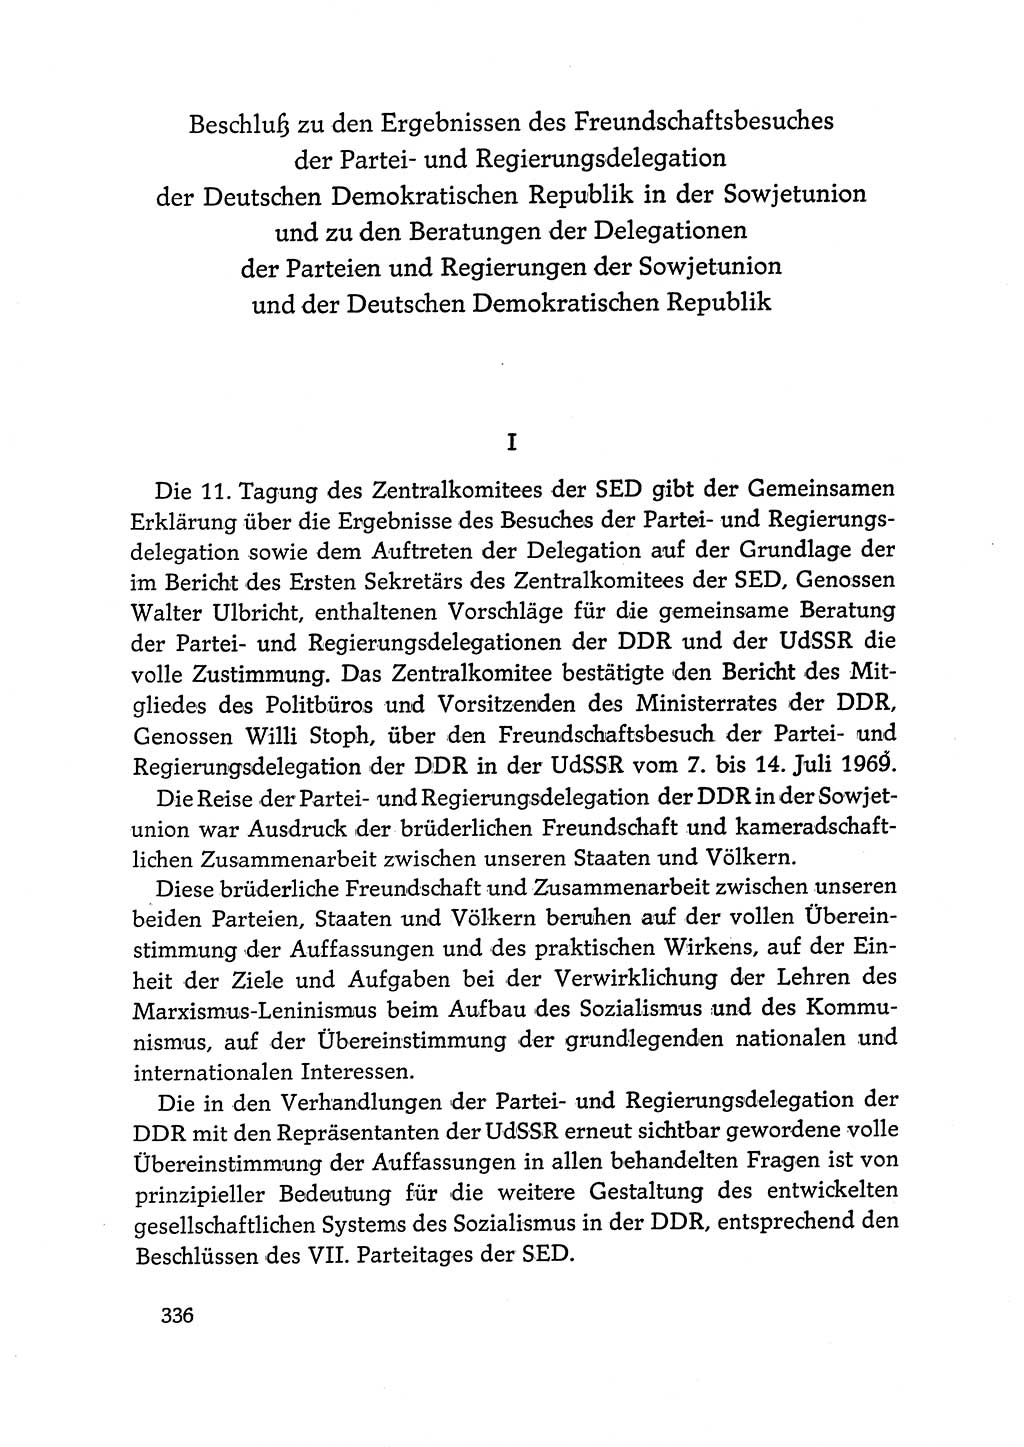 Dokumente der Sozialistischen Einheitspartei Deutschlands (SED) [Deutsche Demokratische Republik (DDR)] 1968-1969, Seite 336 (Dok. SED DDR 1968-1969, S. 336)